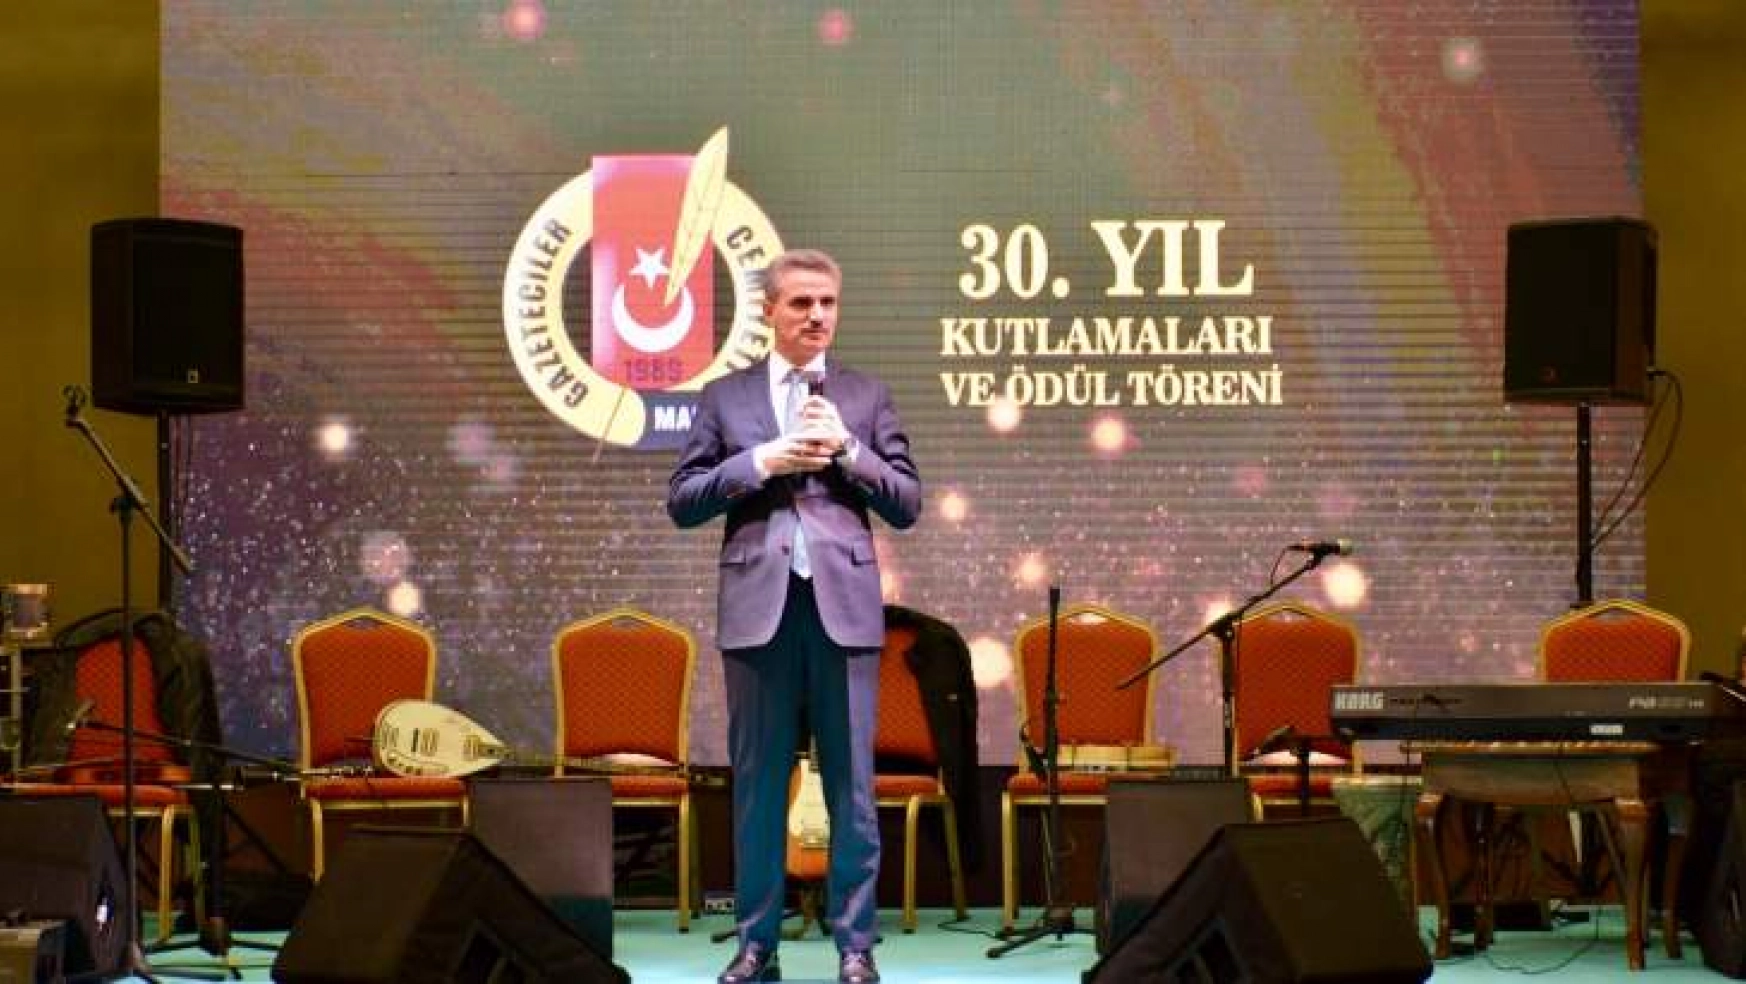 Vali Aydın Baruş Malatya Gazeteciler Cemiyetinin 30. Yıl Kutlamalarına Katıldı